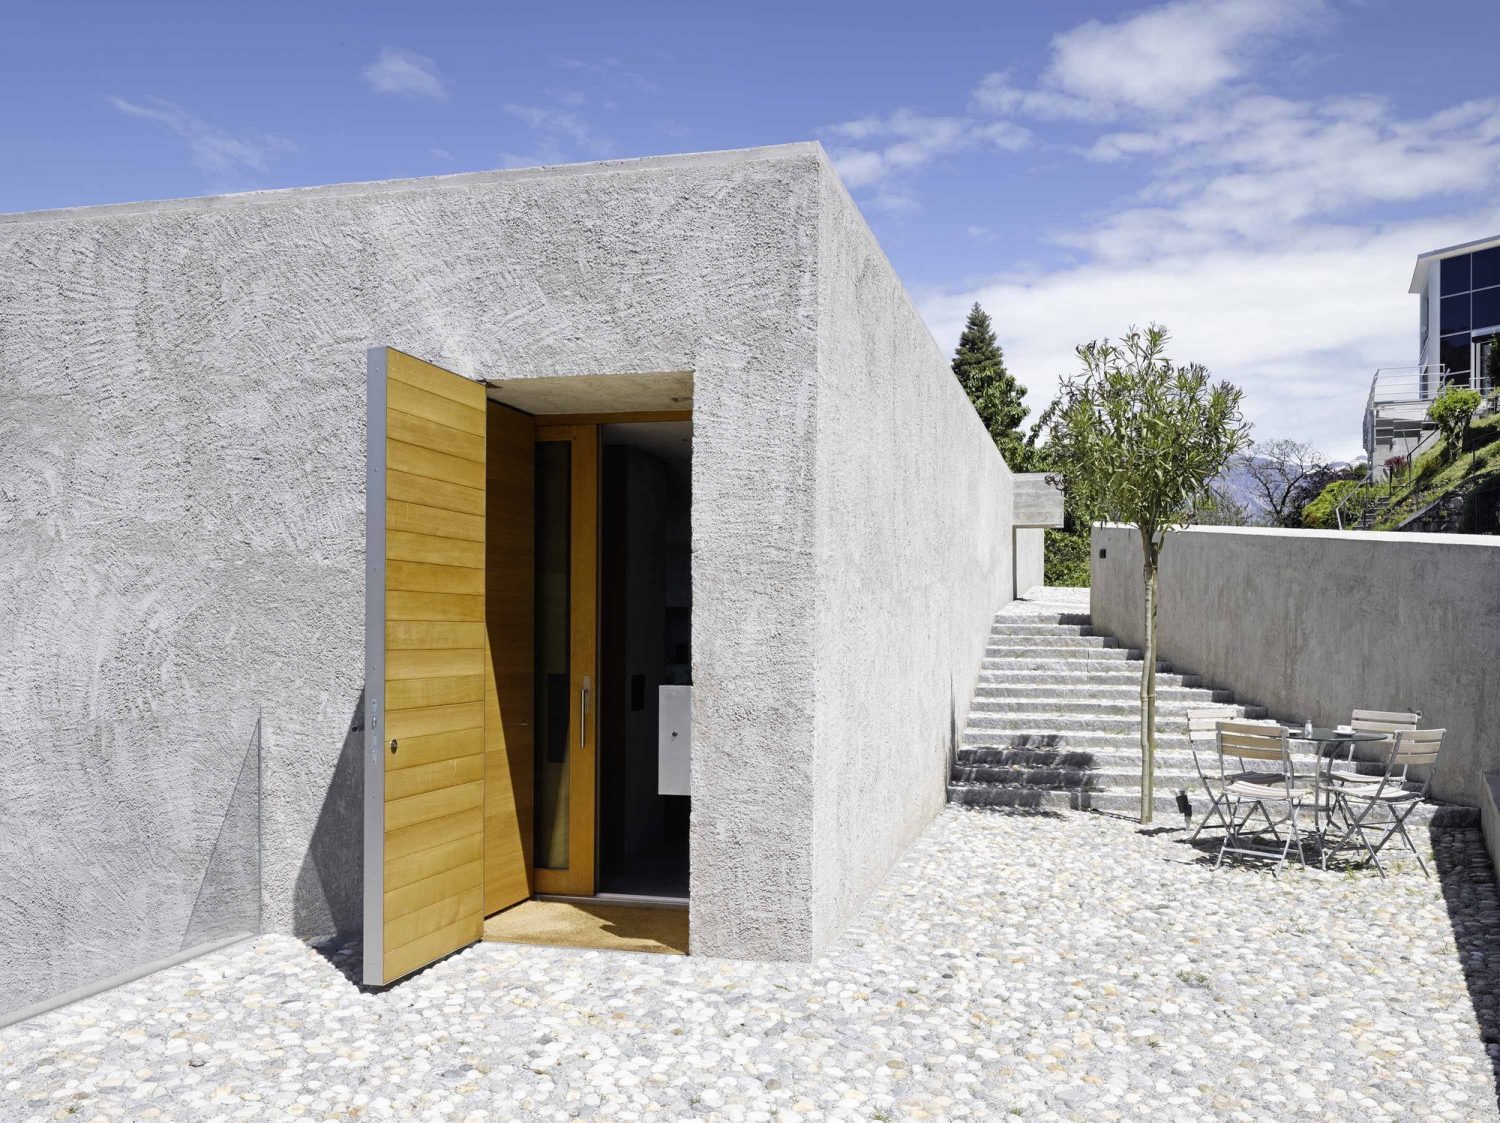 New House in Ranzo by Wespi de Meuron